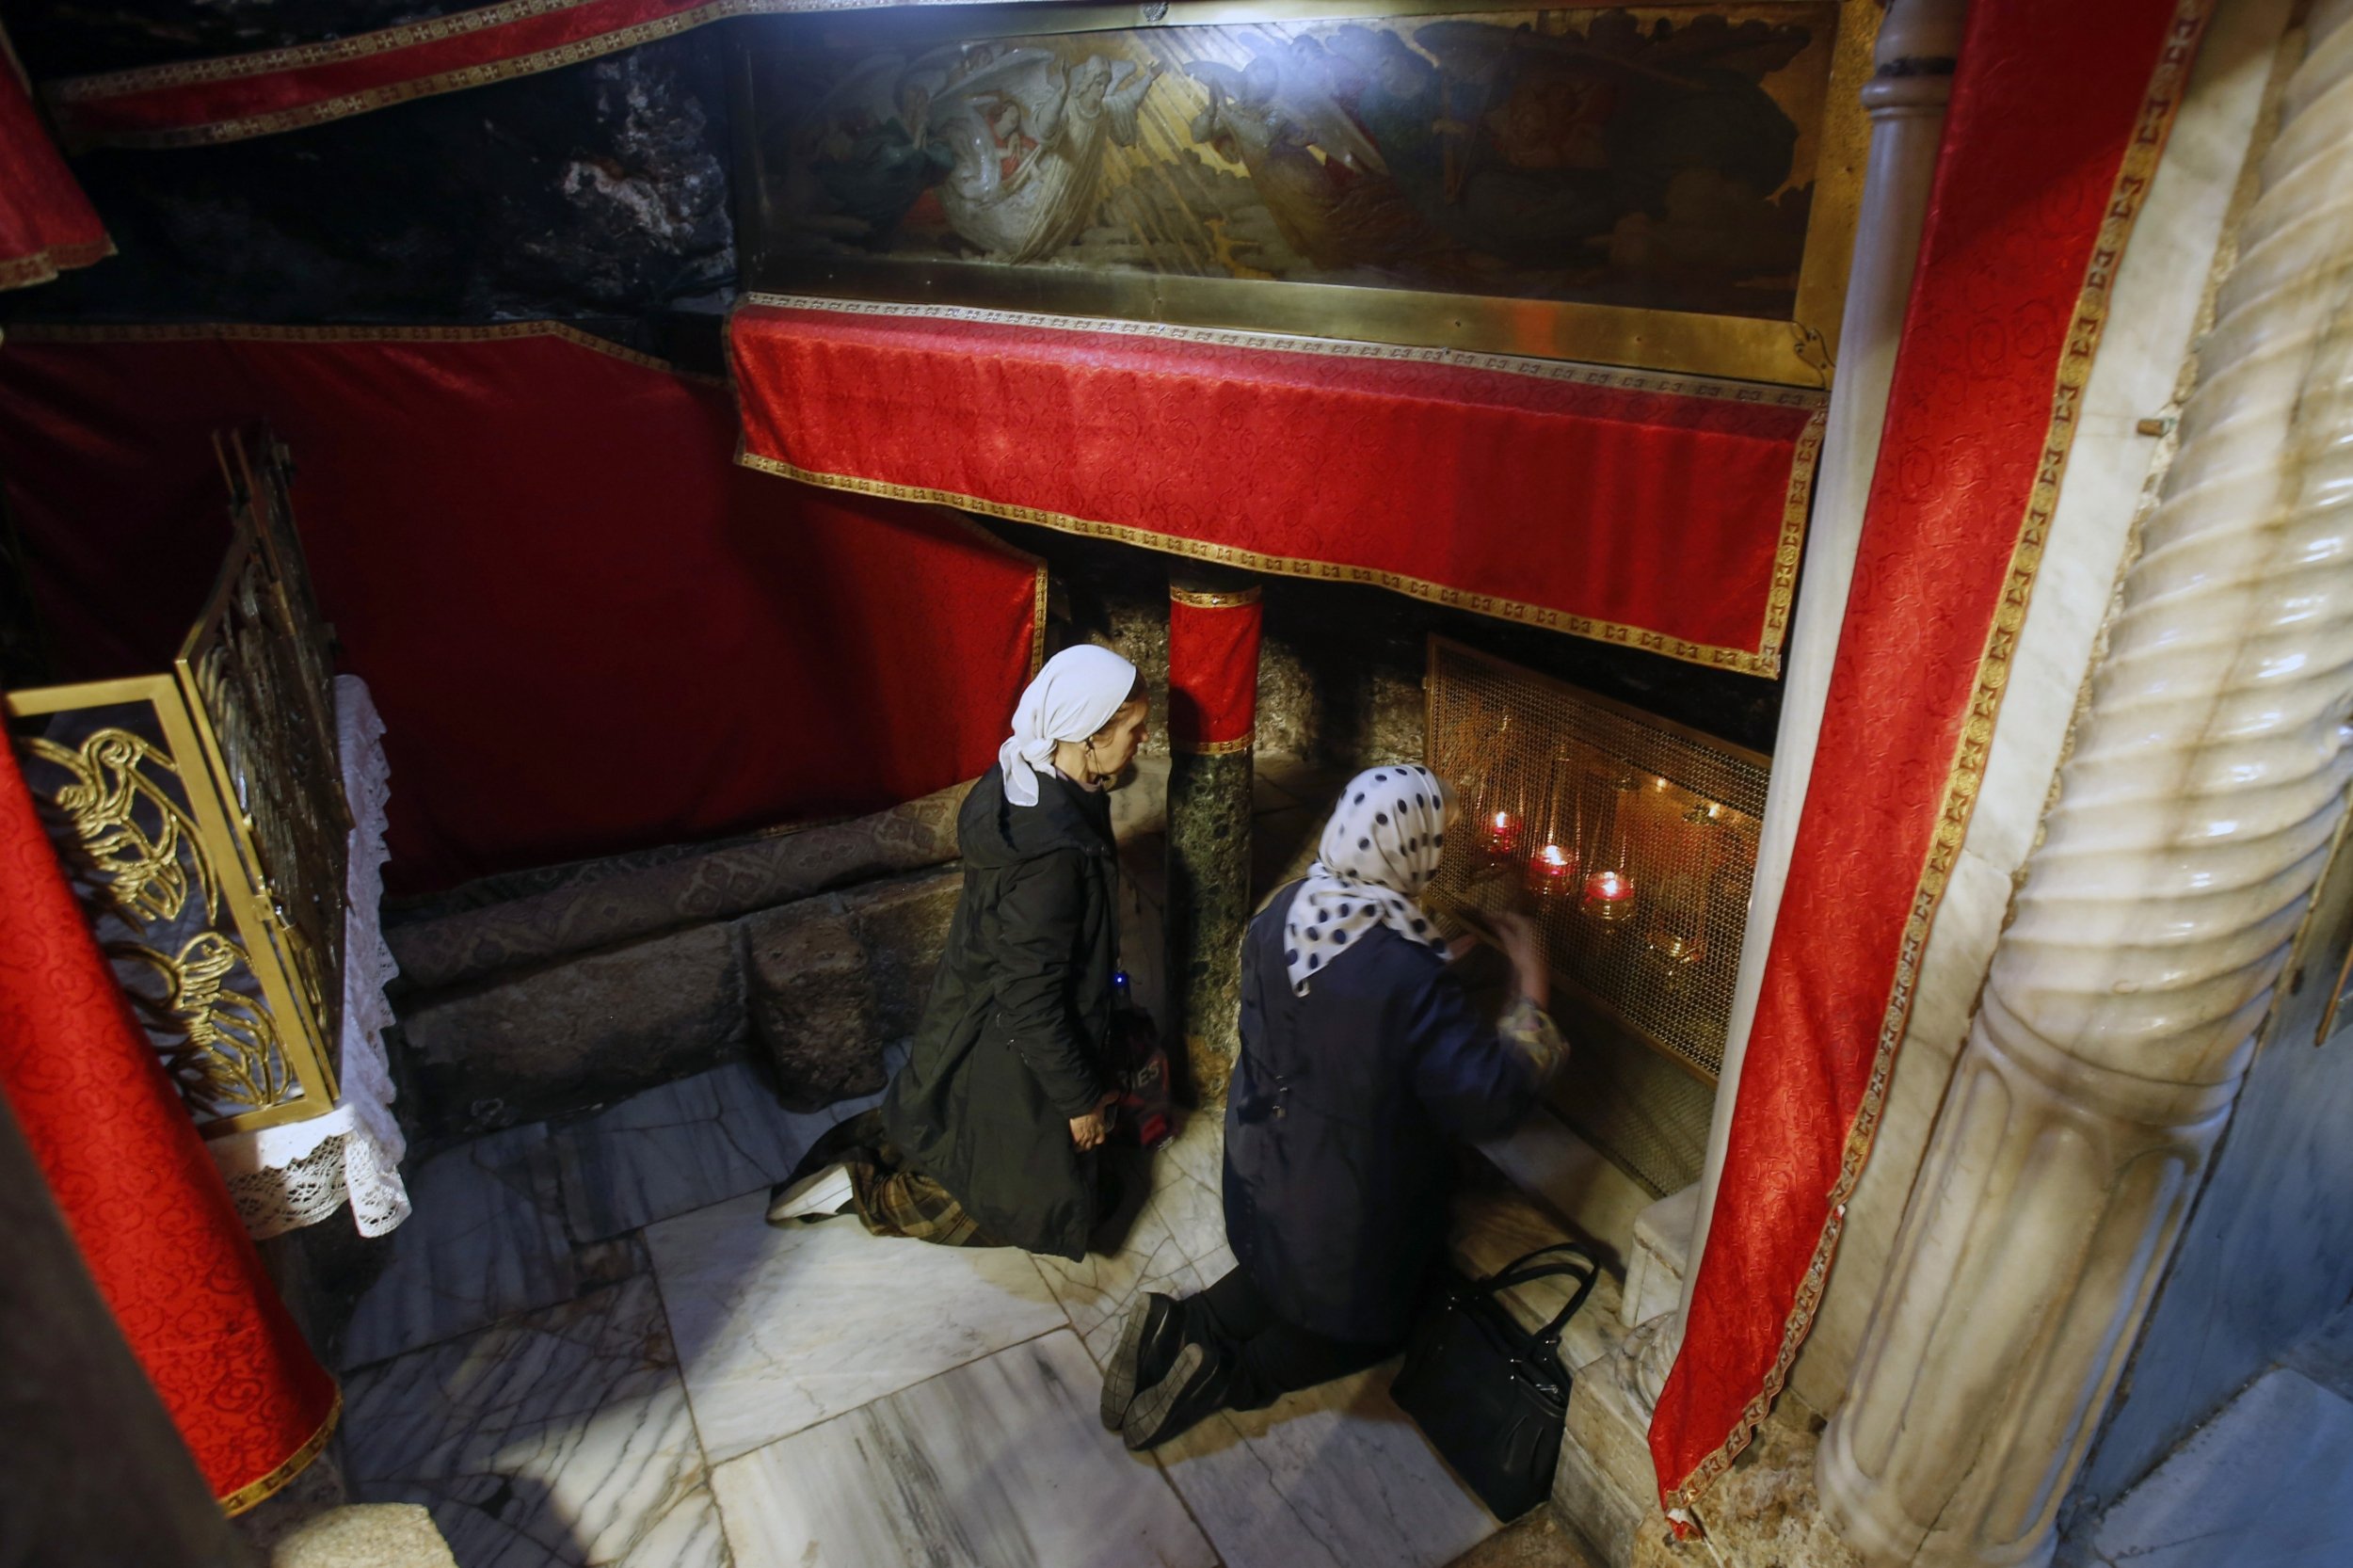 Des pèlerins chrétiens prient à l’église de la Nativité (le lieu où Jésus serait né selon les chrétiens) dans la ville sainte de Bethléem, en Cisjordanie (AFP)